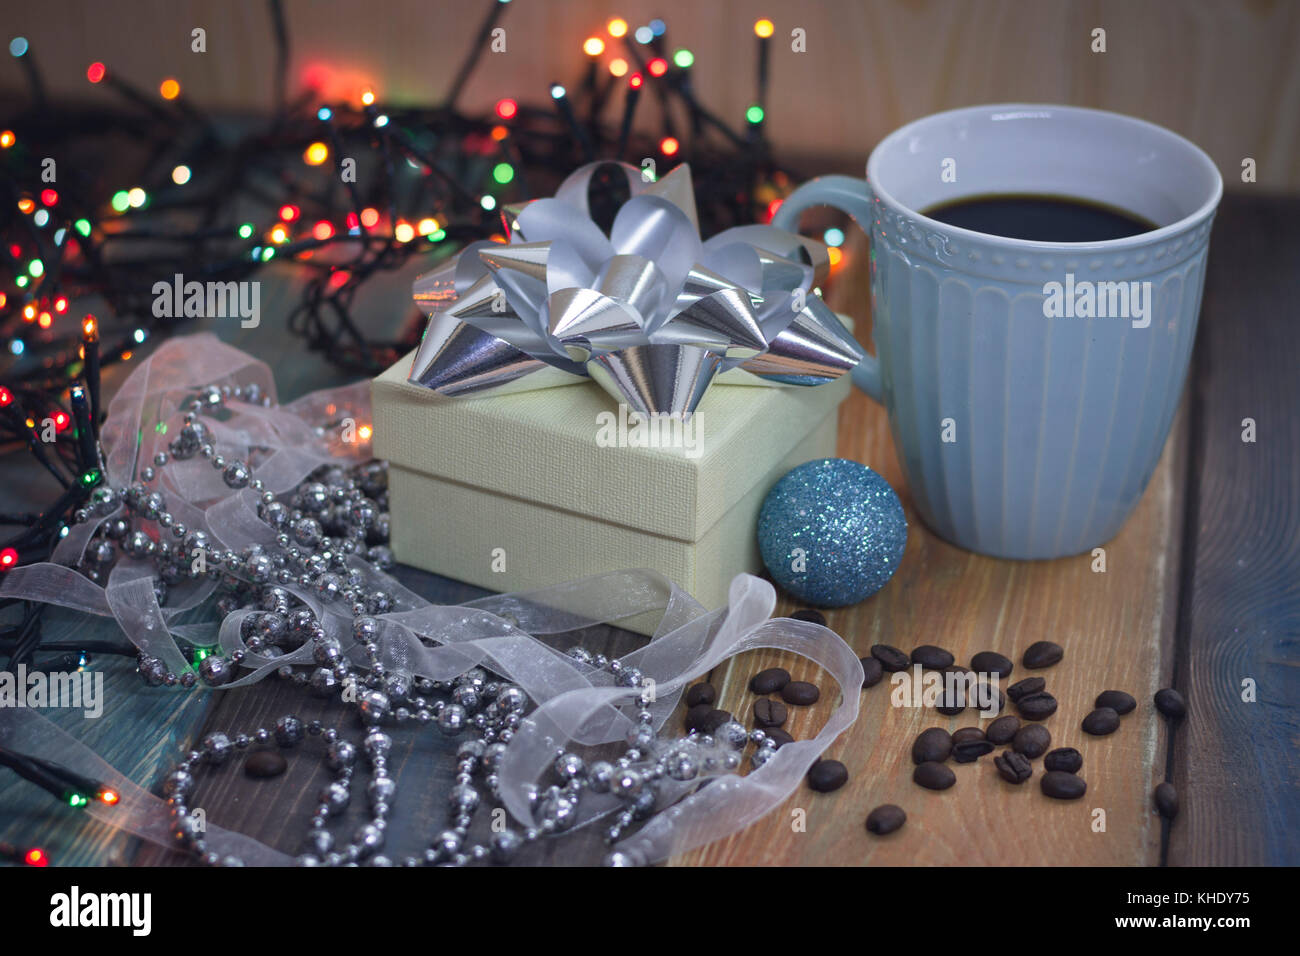 Weiß Geschenkbox, blaue Schale, blaue Kugel und Perlen auf dem Tisch Stockfoto